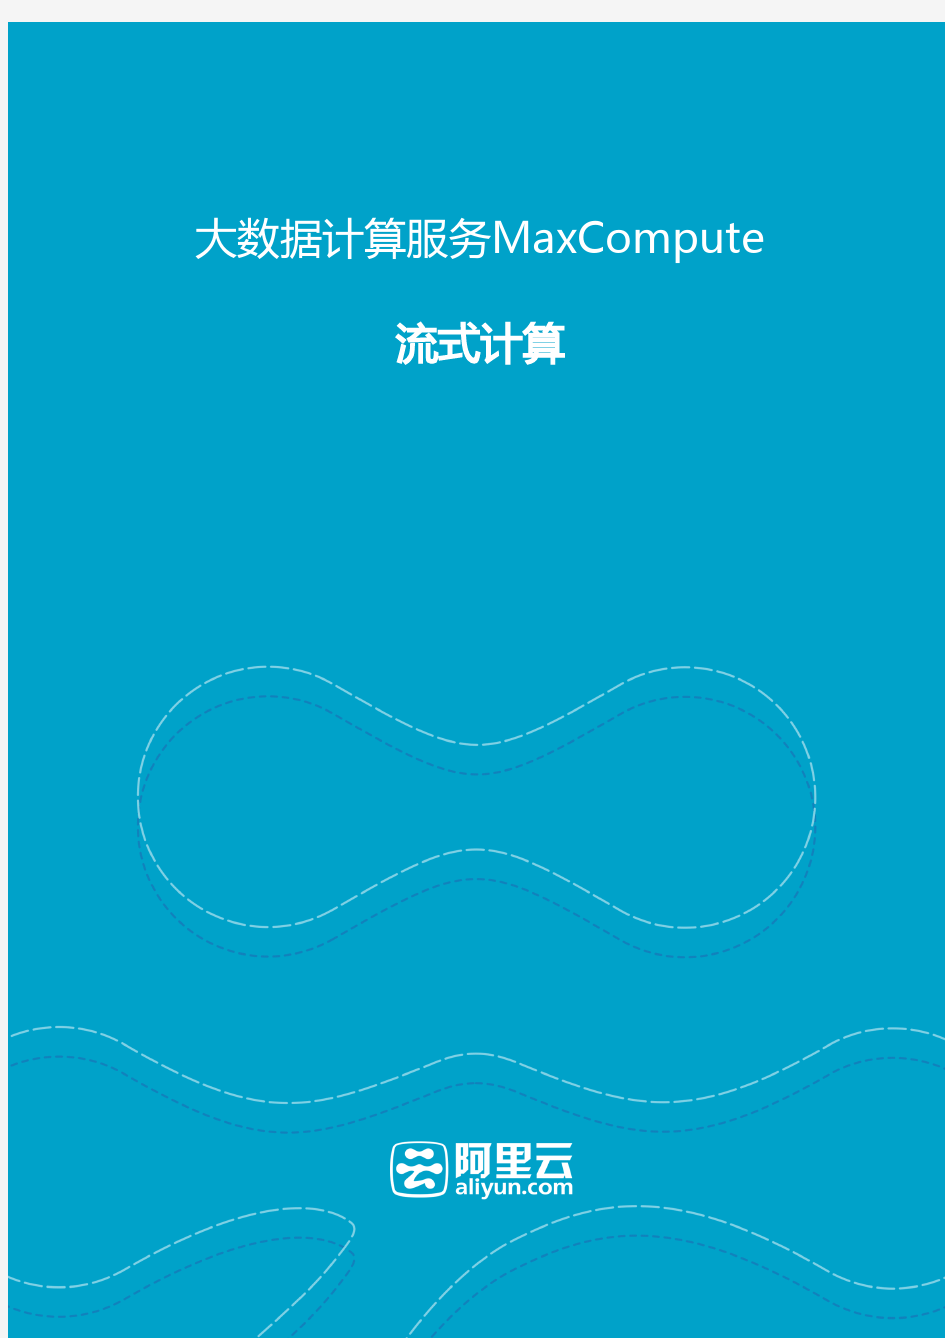 阿里大数据计算服务MaxCompute-流式计算